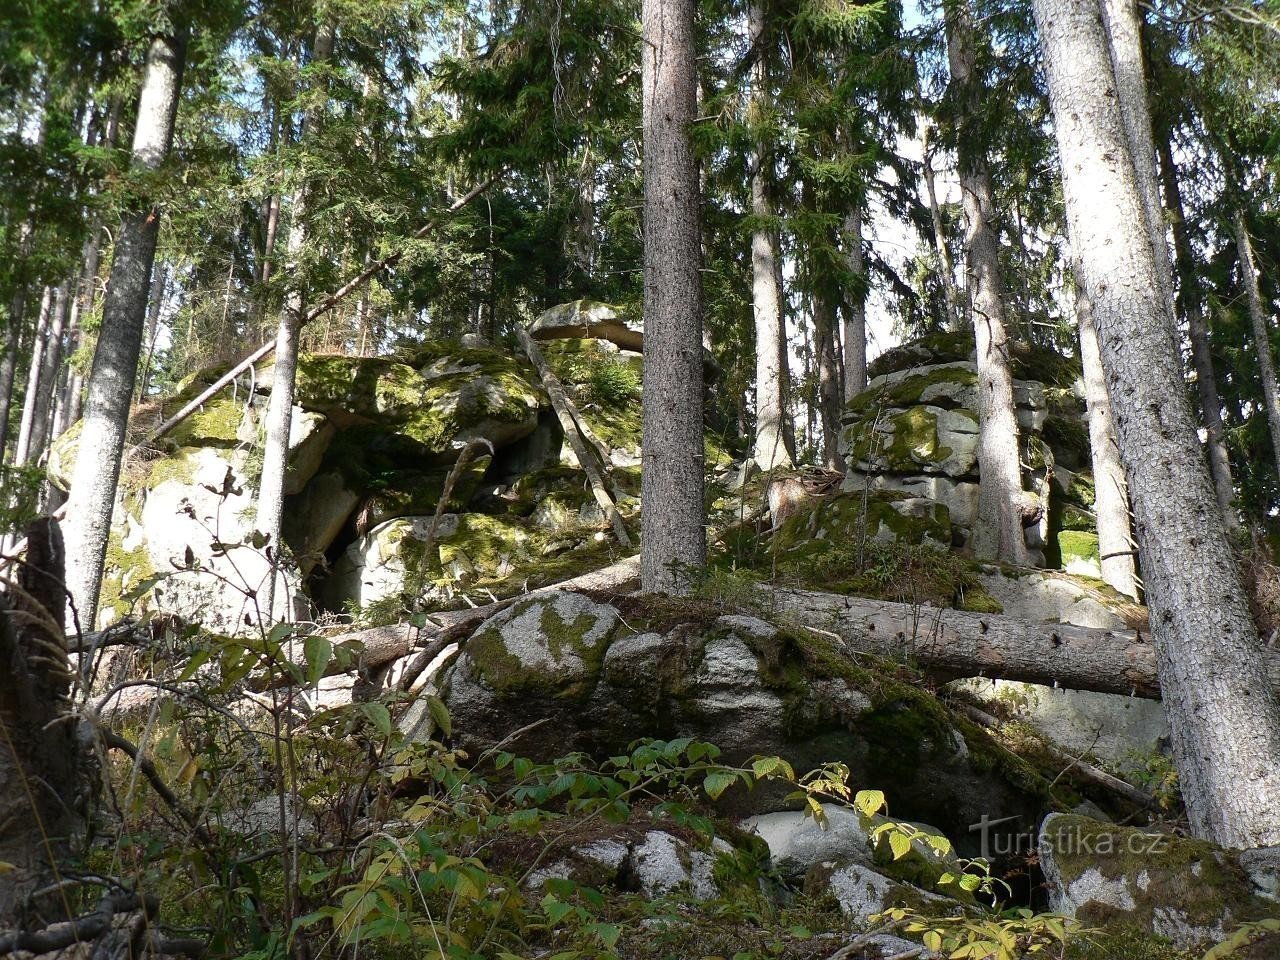 Trilha do urso, pedras no início da trilha